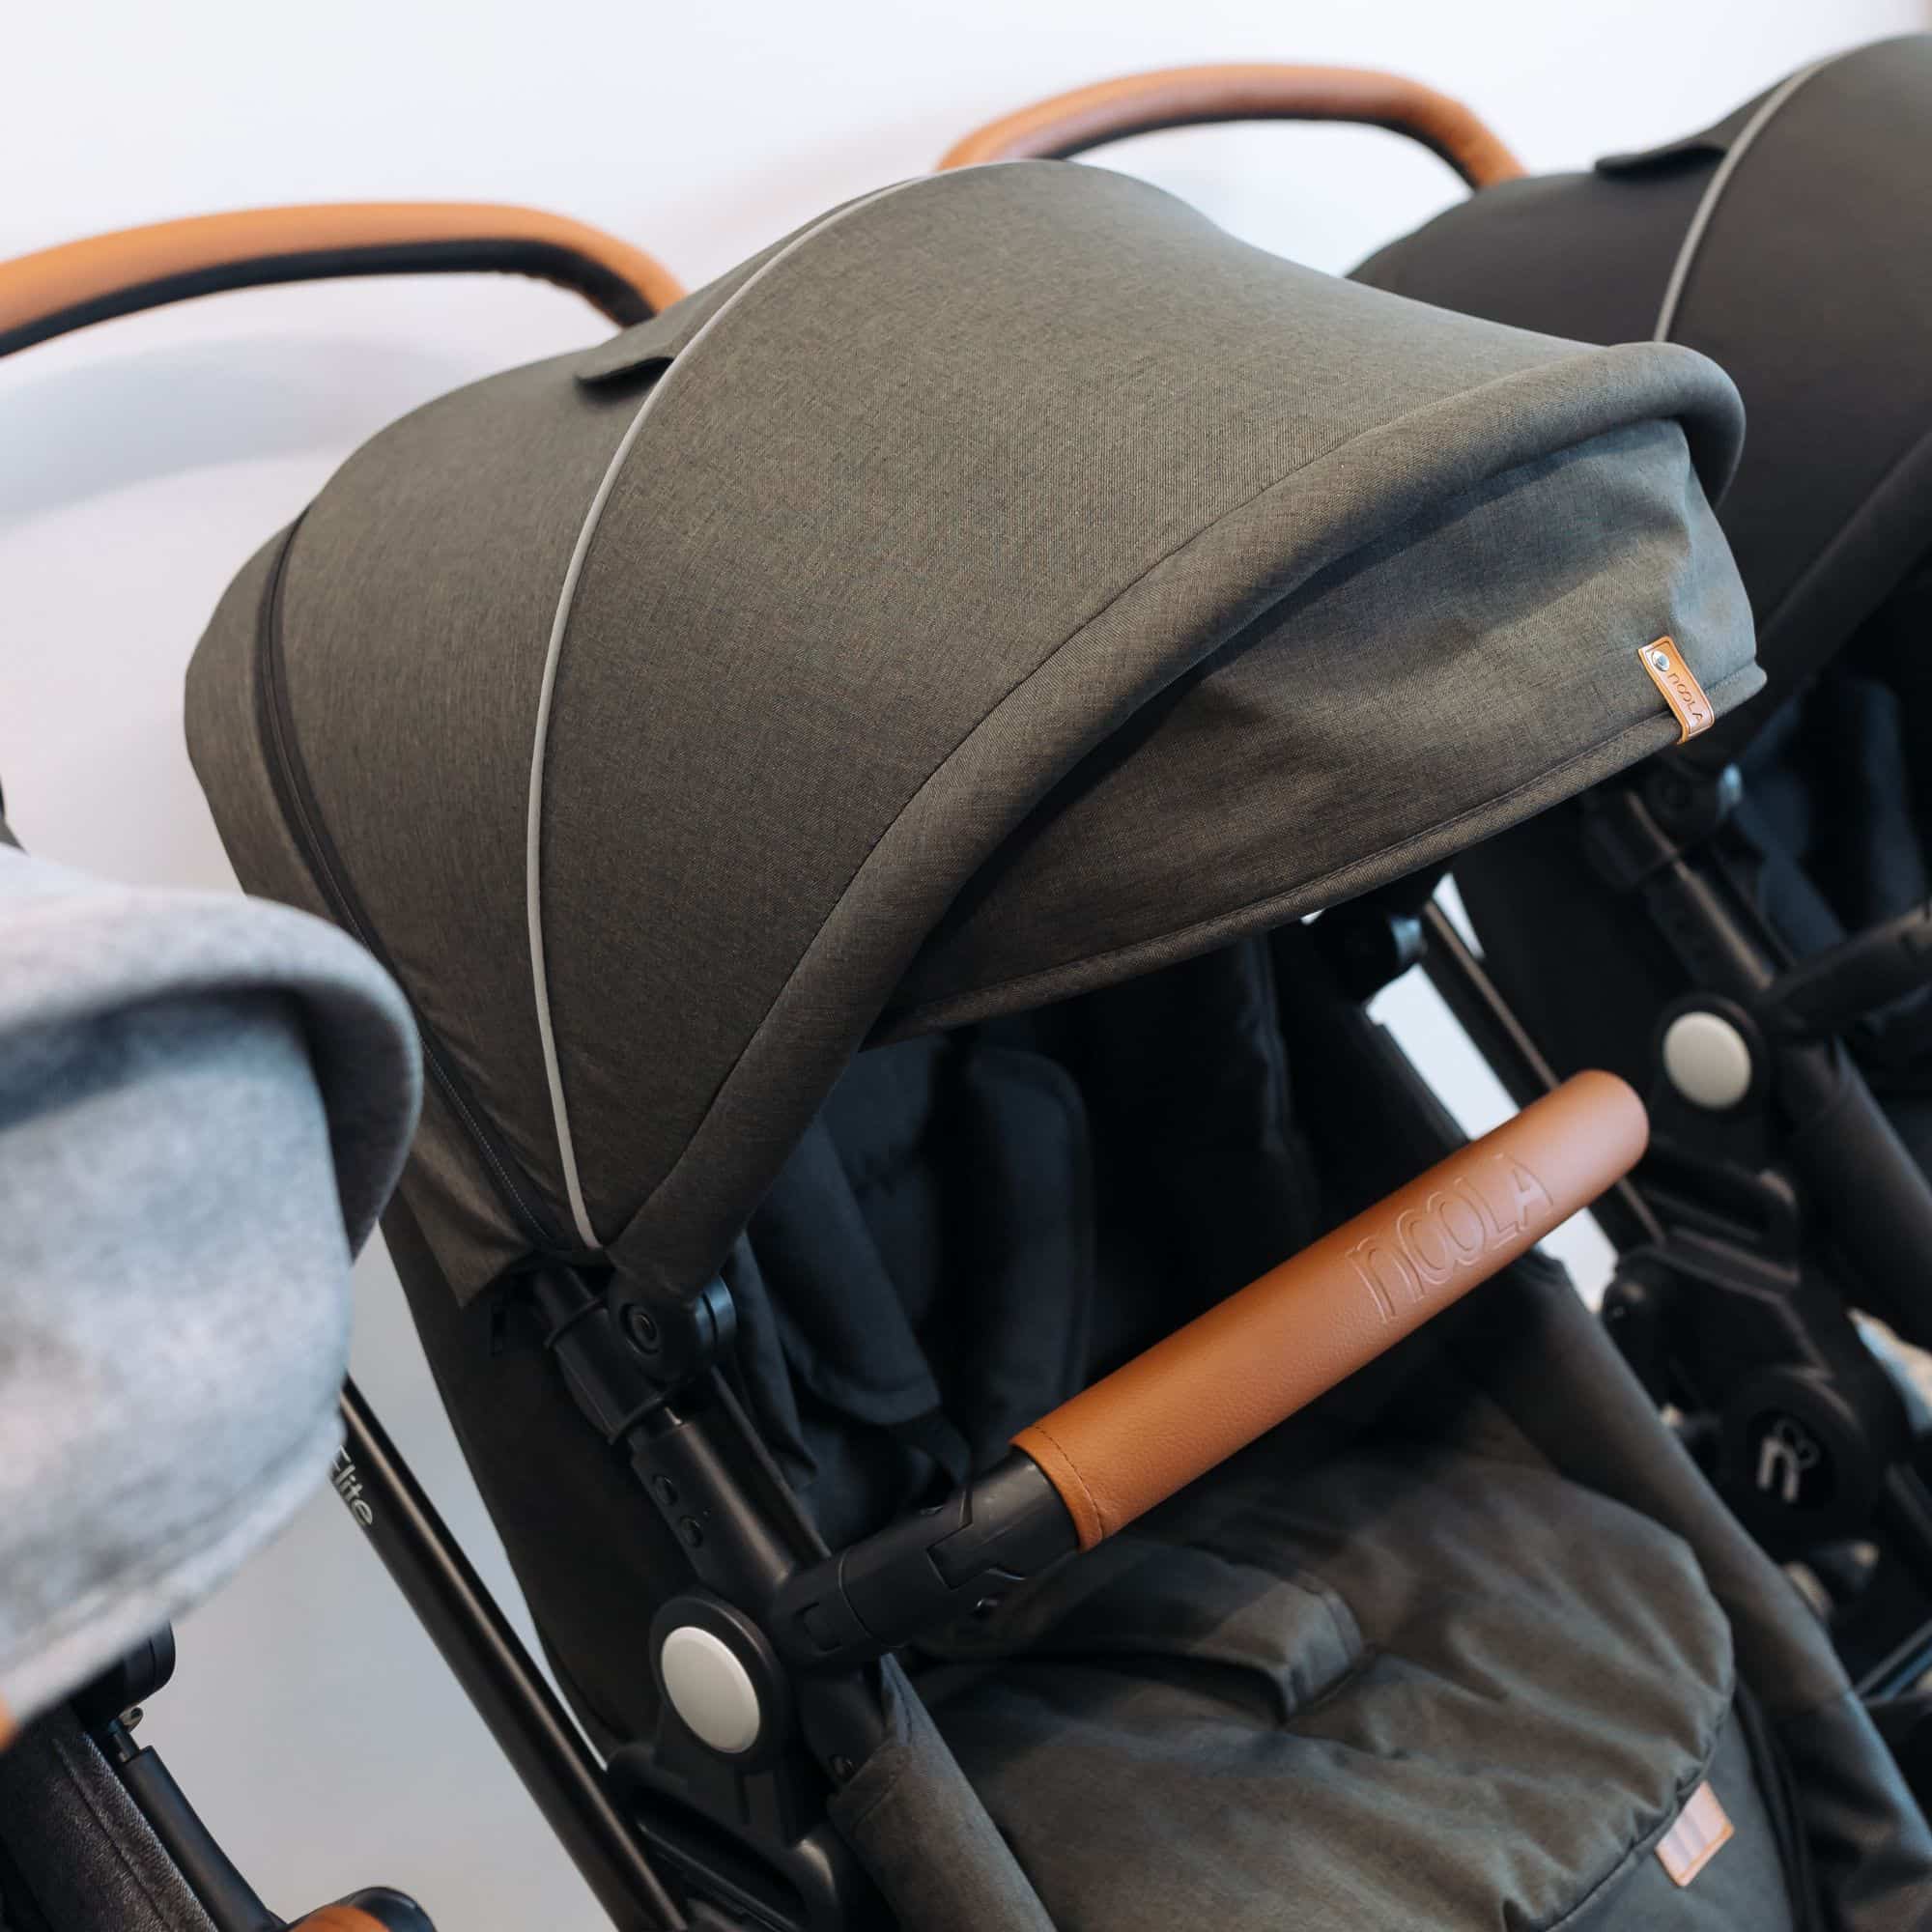 noola the elite 2in1 travel system midnight black baby stroller